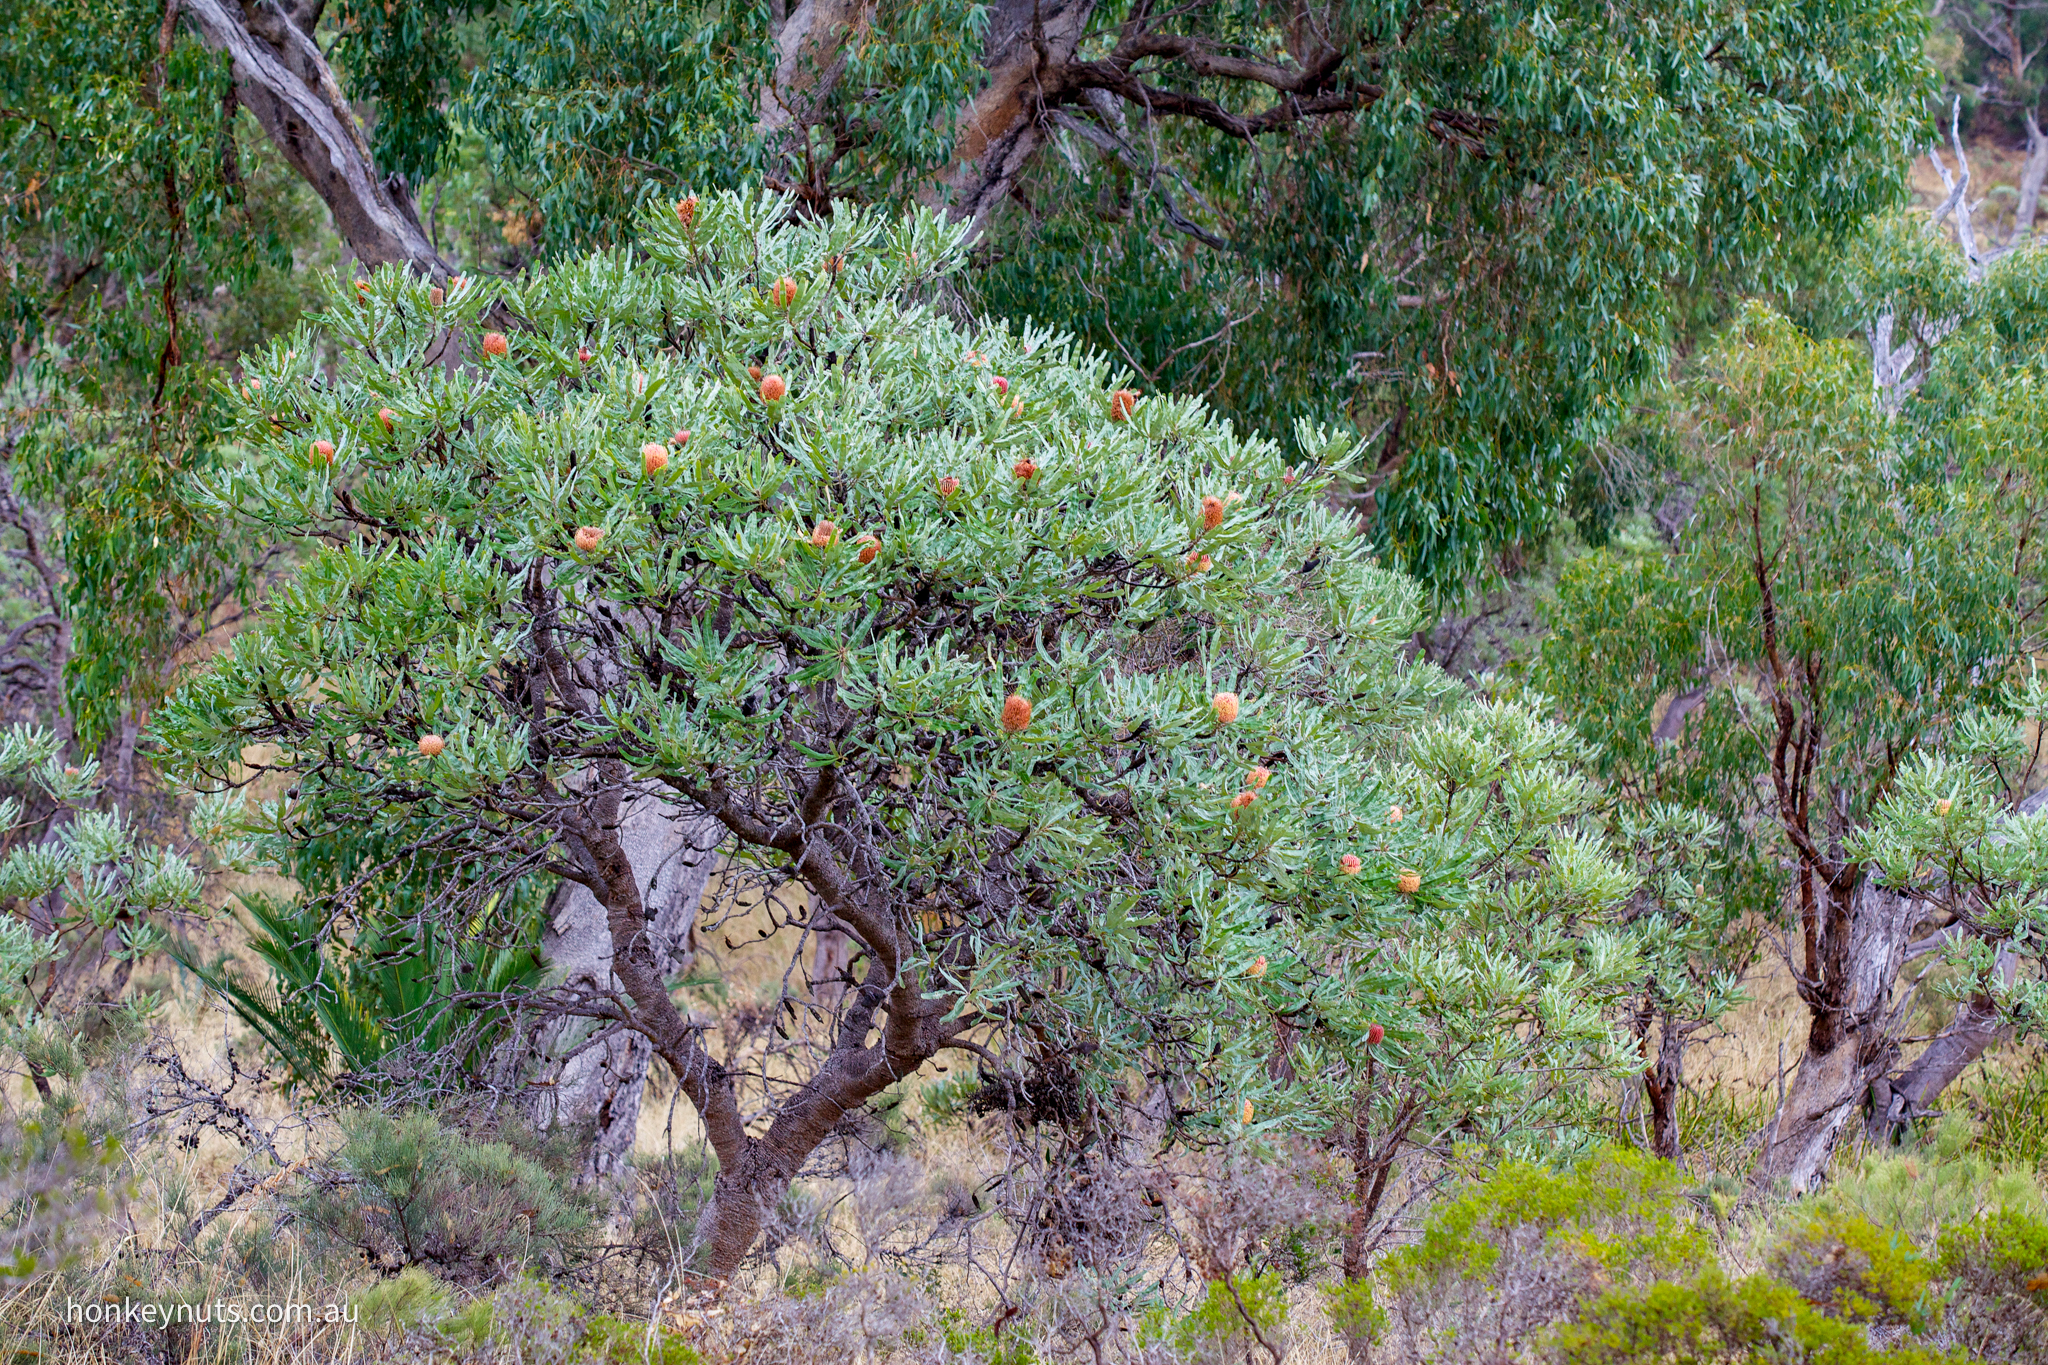 Rottnest tea-tree (Melaleuca lanceolata) – Honkey Nuts